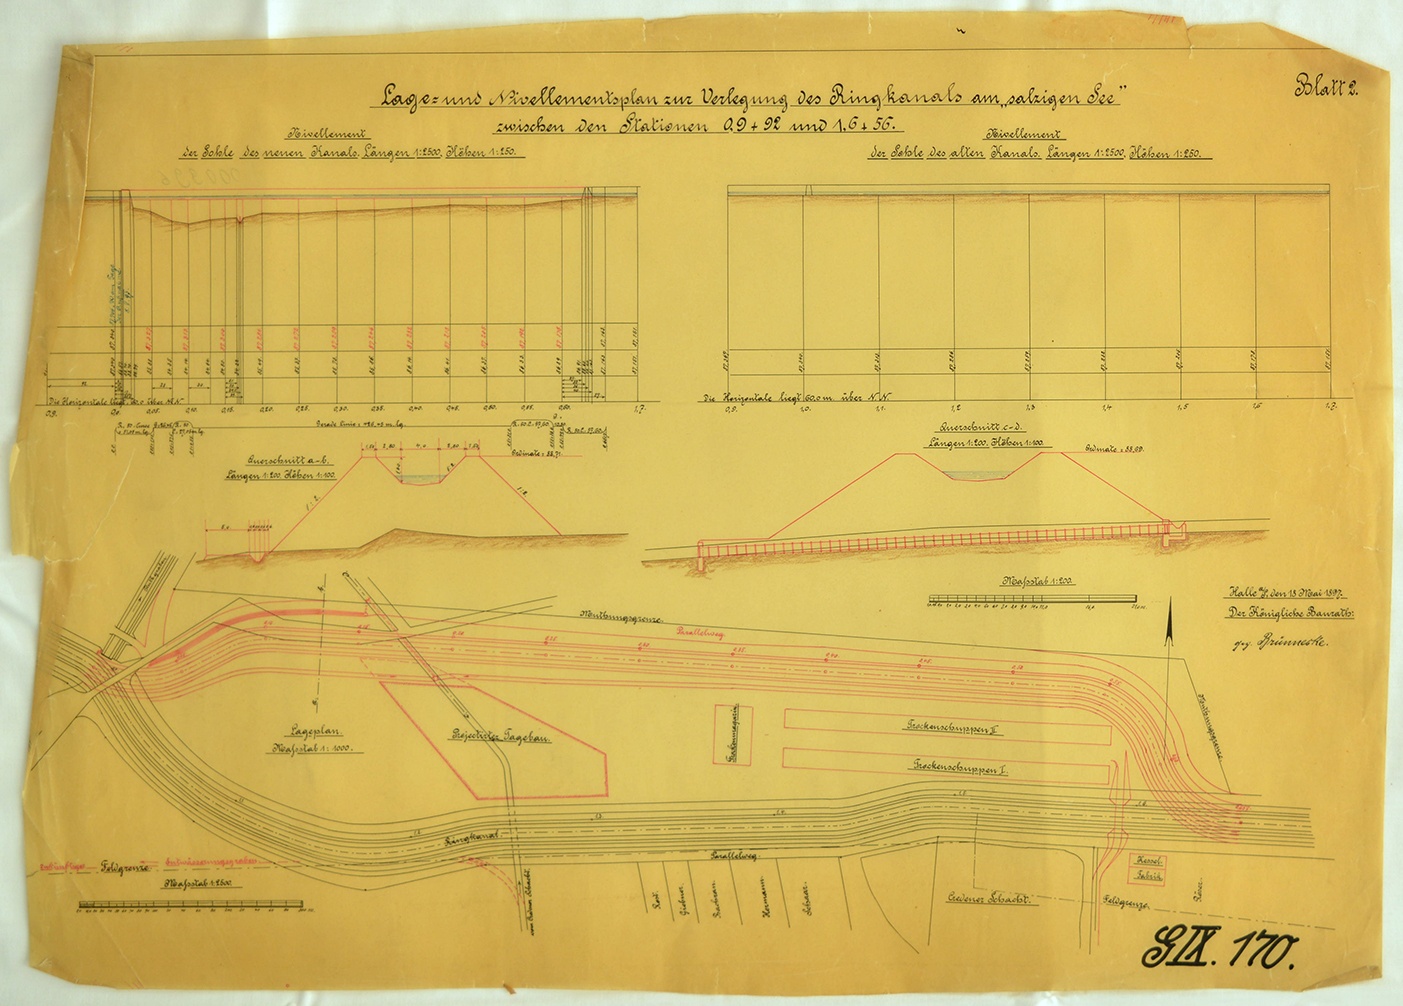 Lage- und Nivellementsplan zur Verlegung des Ringkanals am "salzigen See" zwischen den Stationen 0,9+92 und 1,6+56.  Blatt 2. (Mansfeld-Museum im Humboldt-Schloss CC BY-NC-SA)